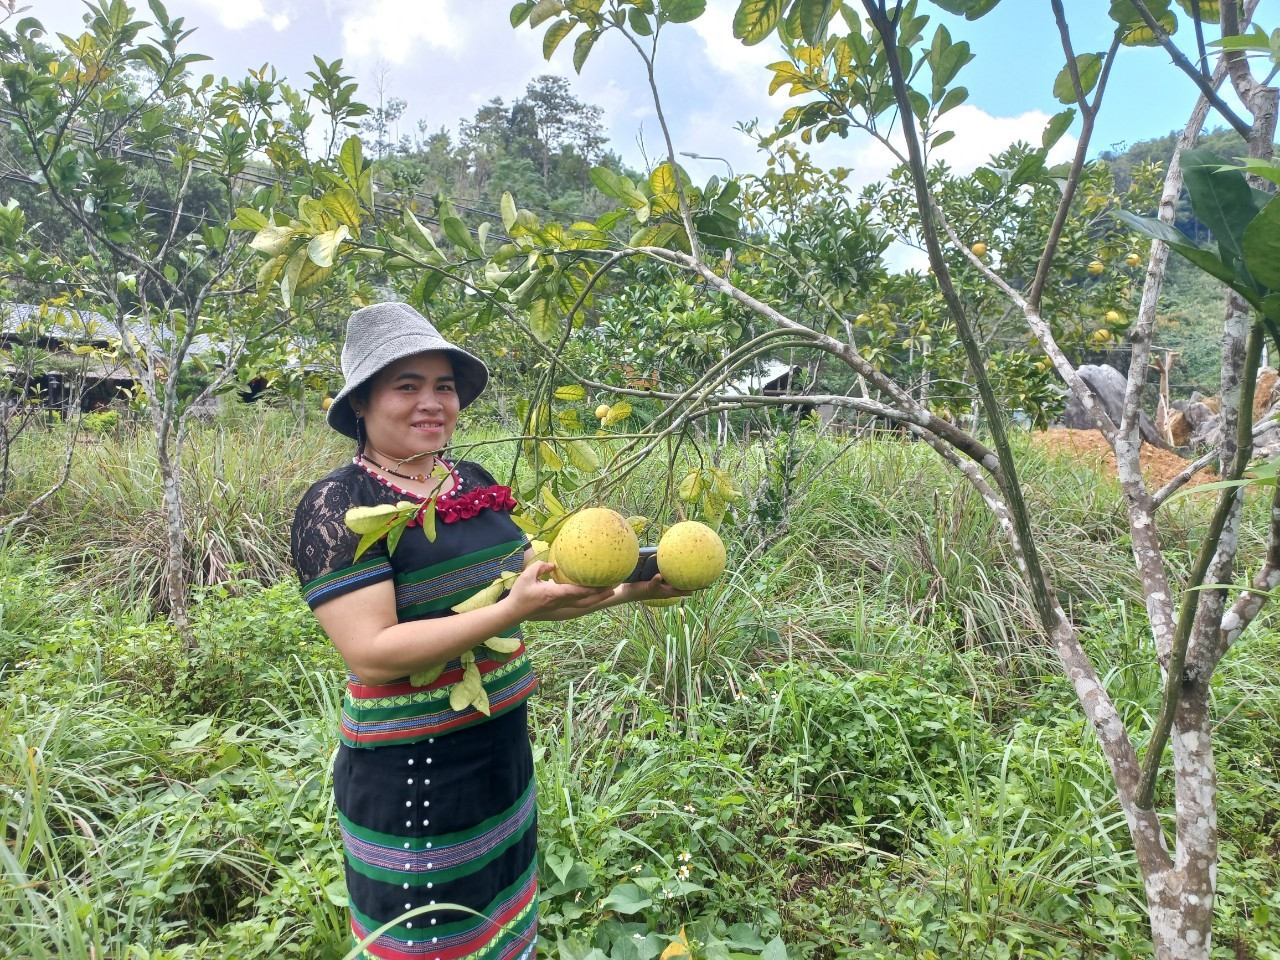 Cải tạo vườn tạp để trồng cây ăn quả được người dân xã Mà Cooih chú trọng triển khai. Ảnh: N.B